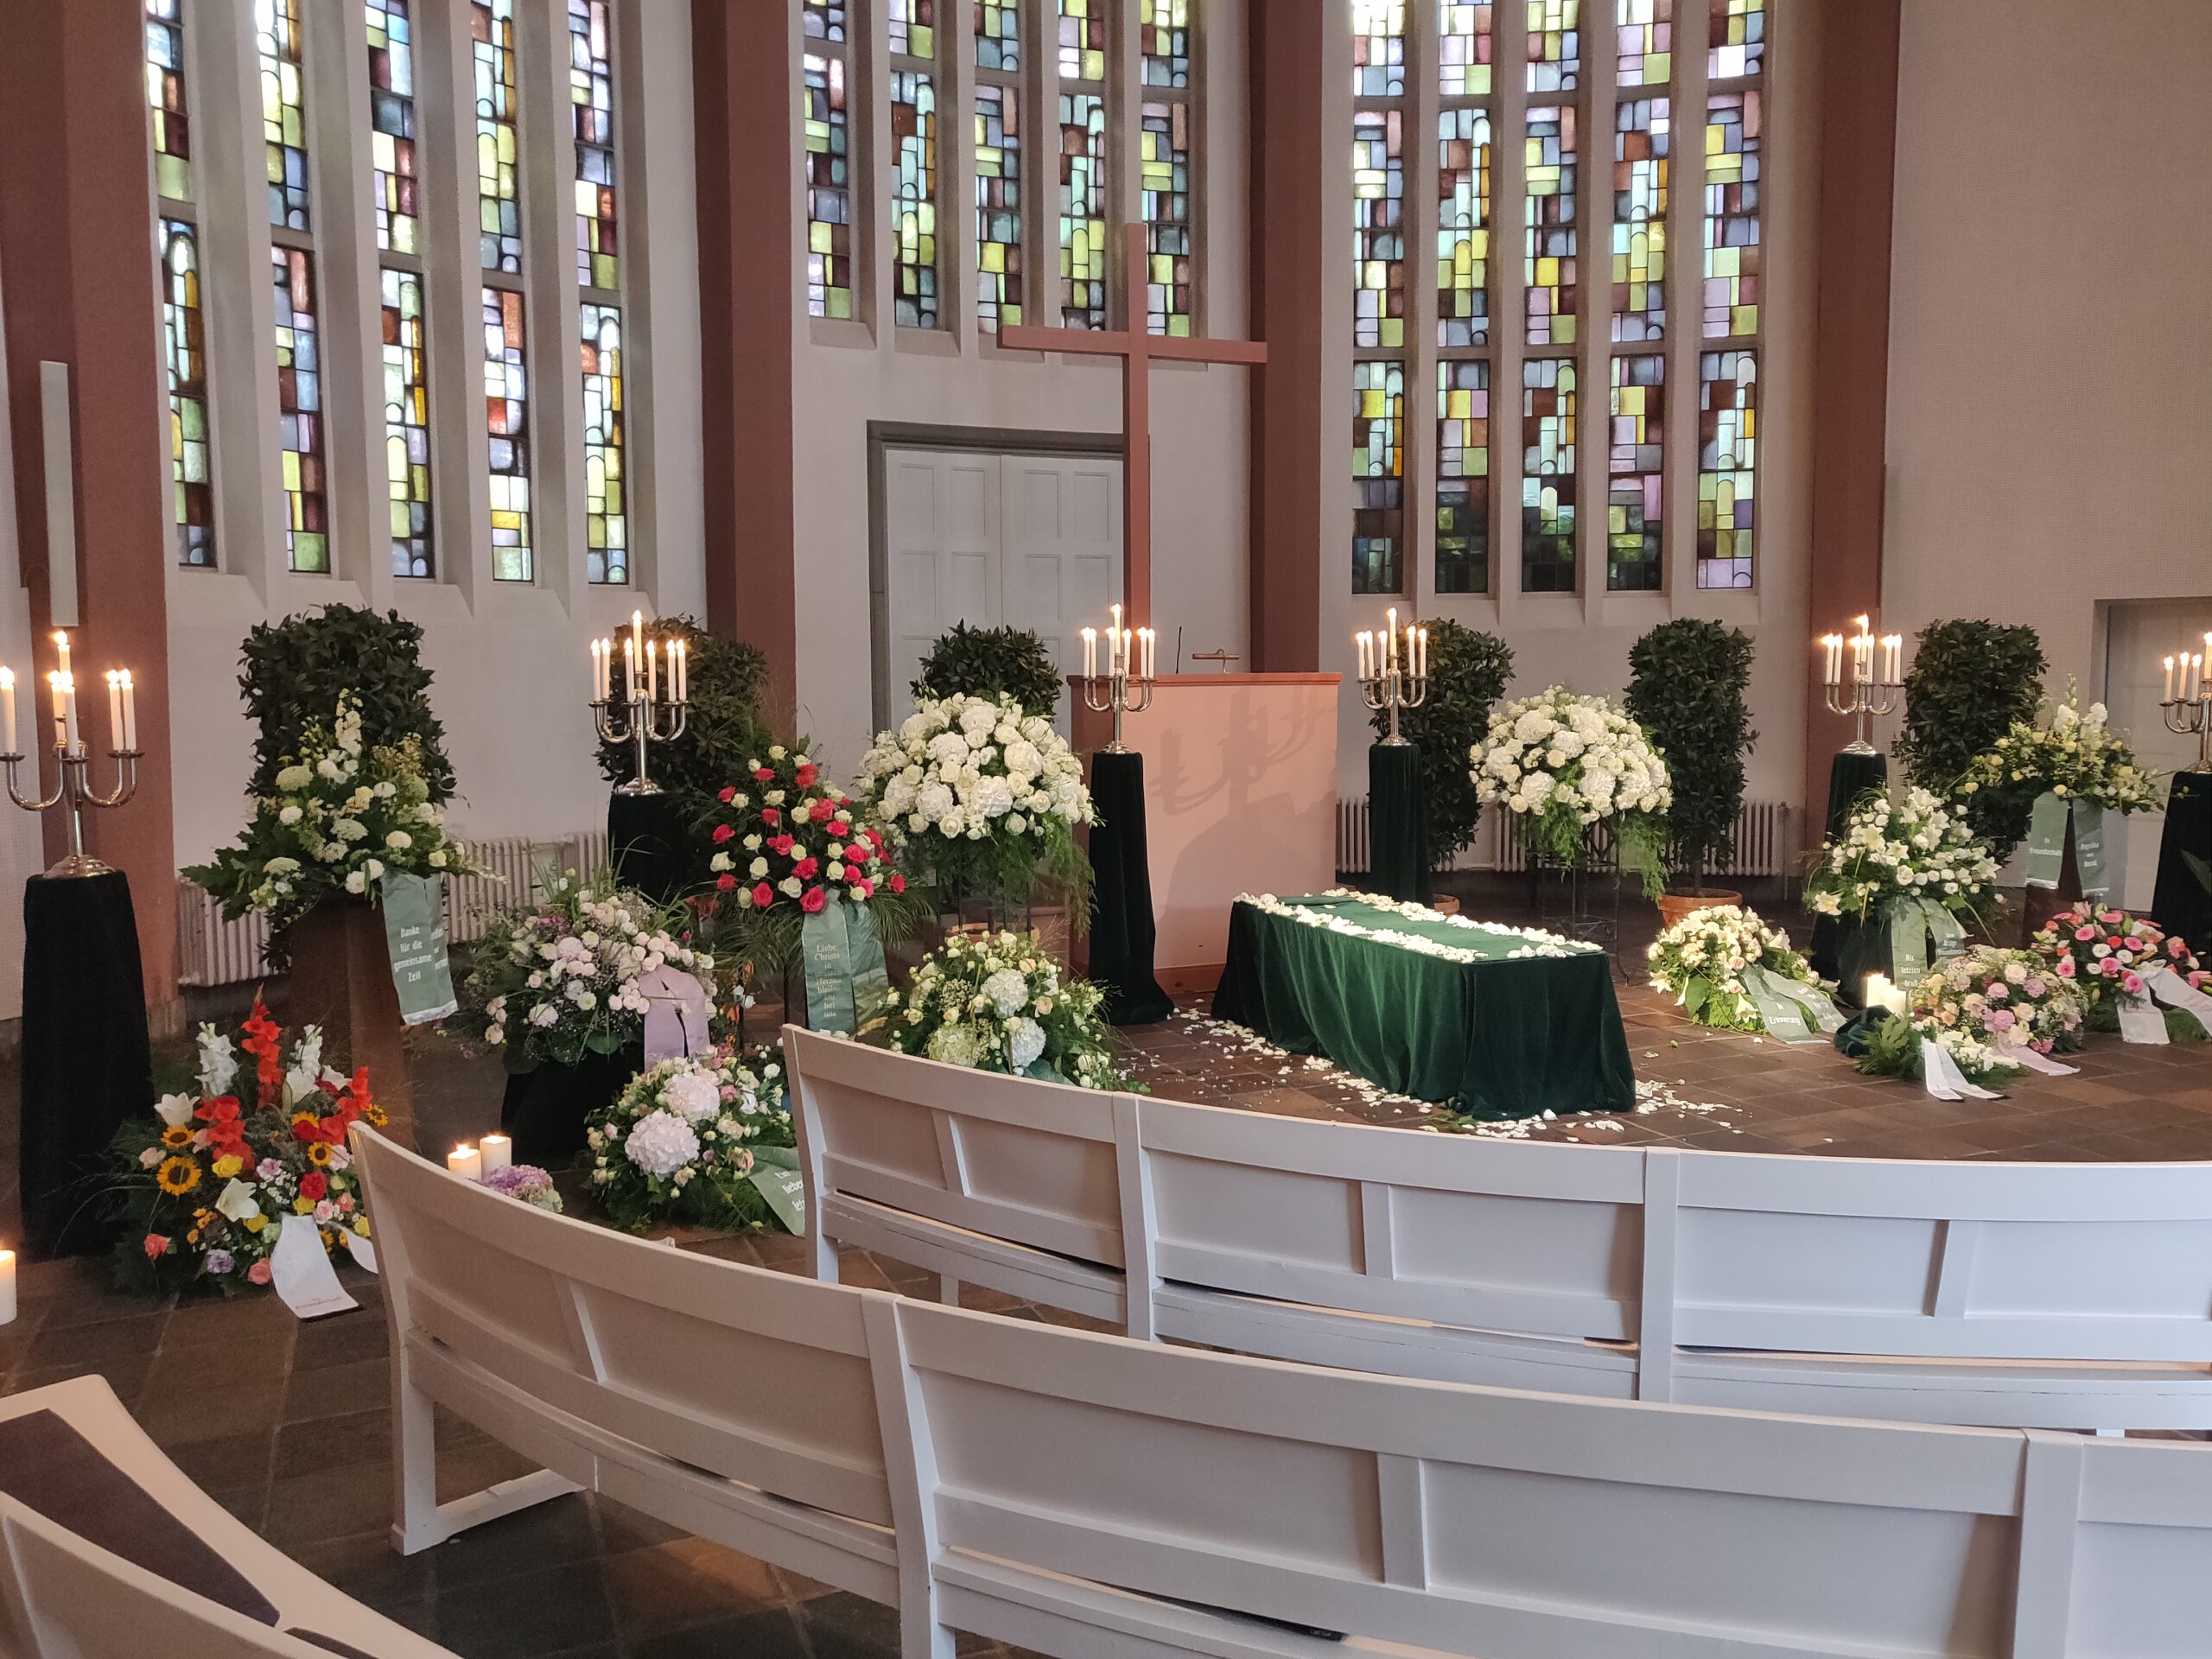 安睡多福墓園十三個基督教堂可舉行安息禮拜。